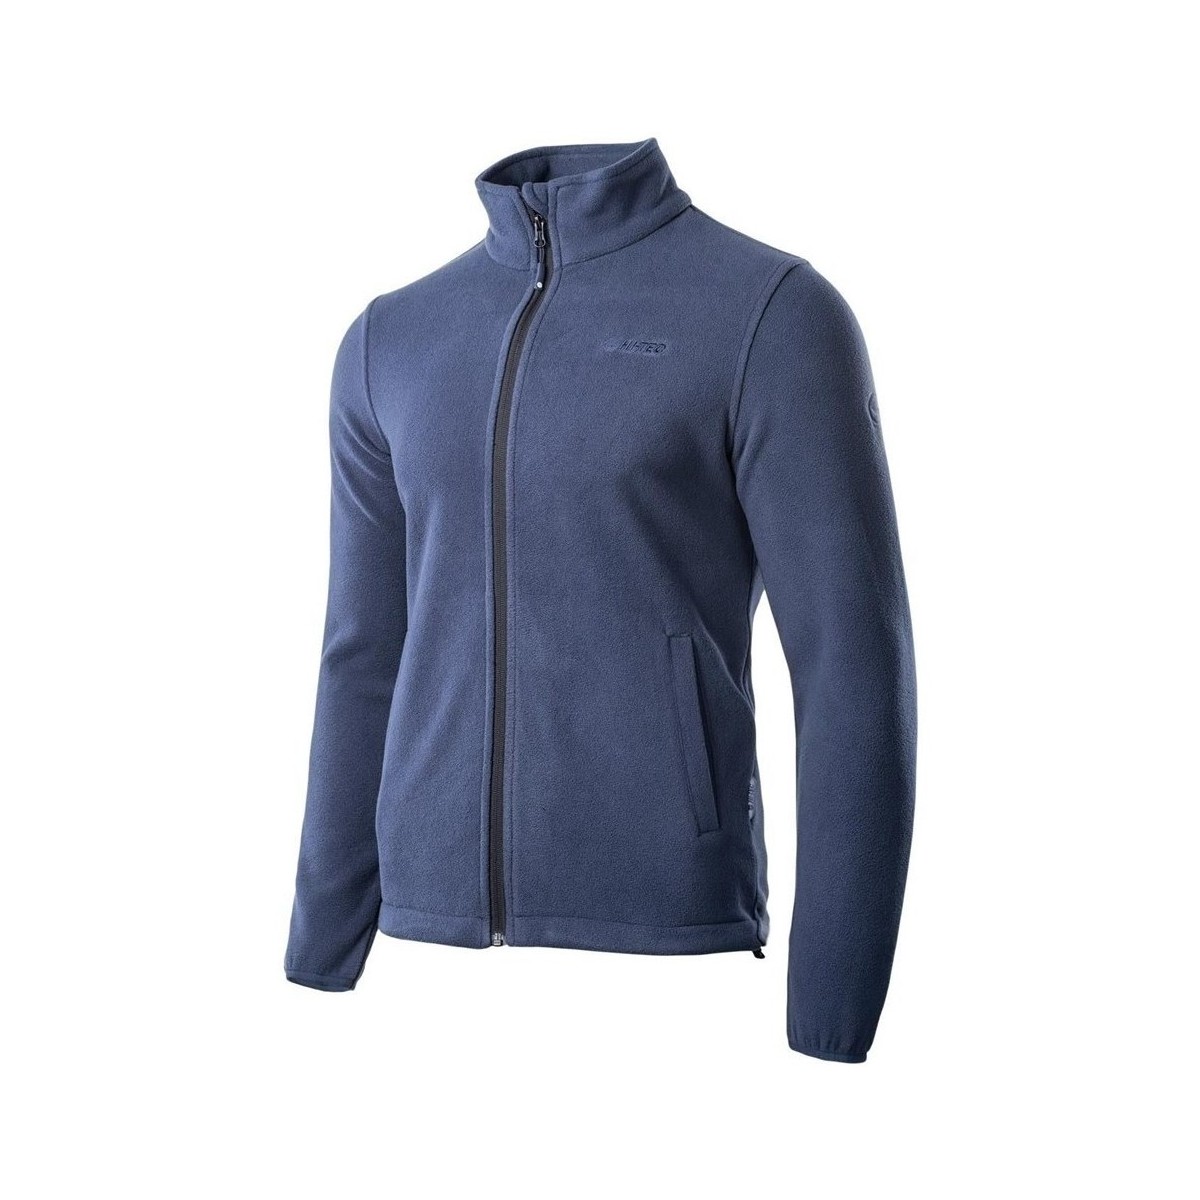 Textiel Heren Sweaters / Sweatshirts Hi-Tec Henis Blauw